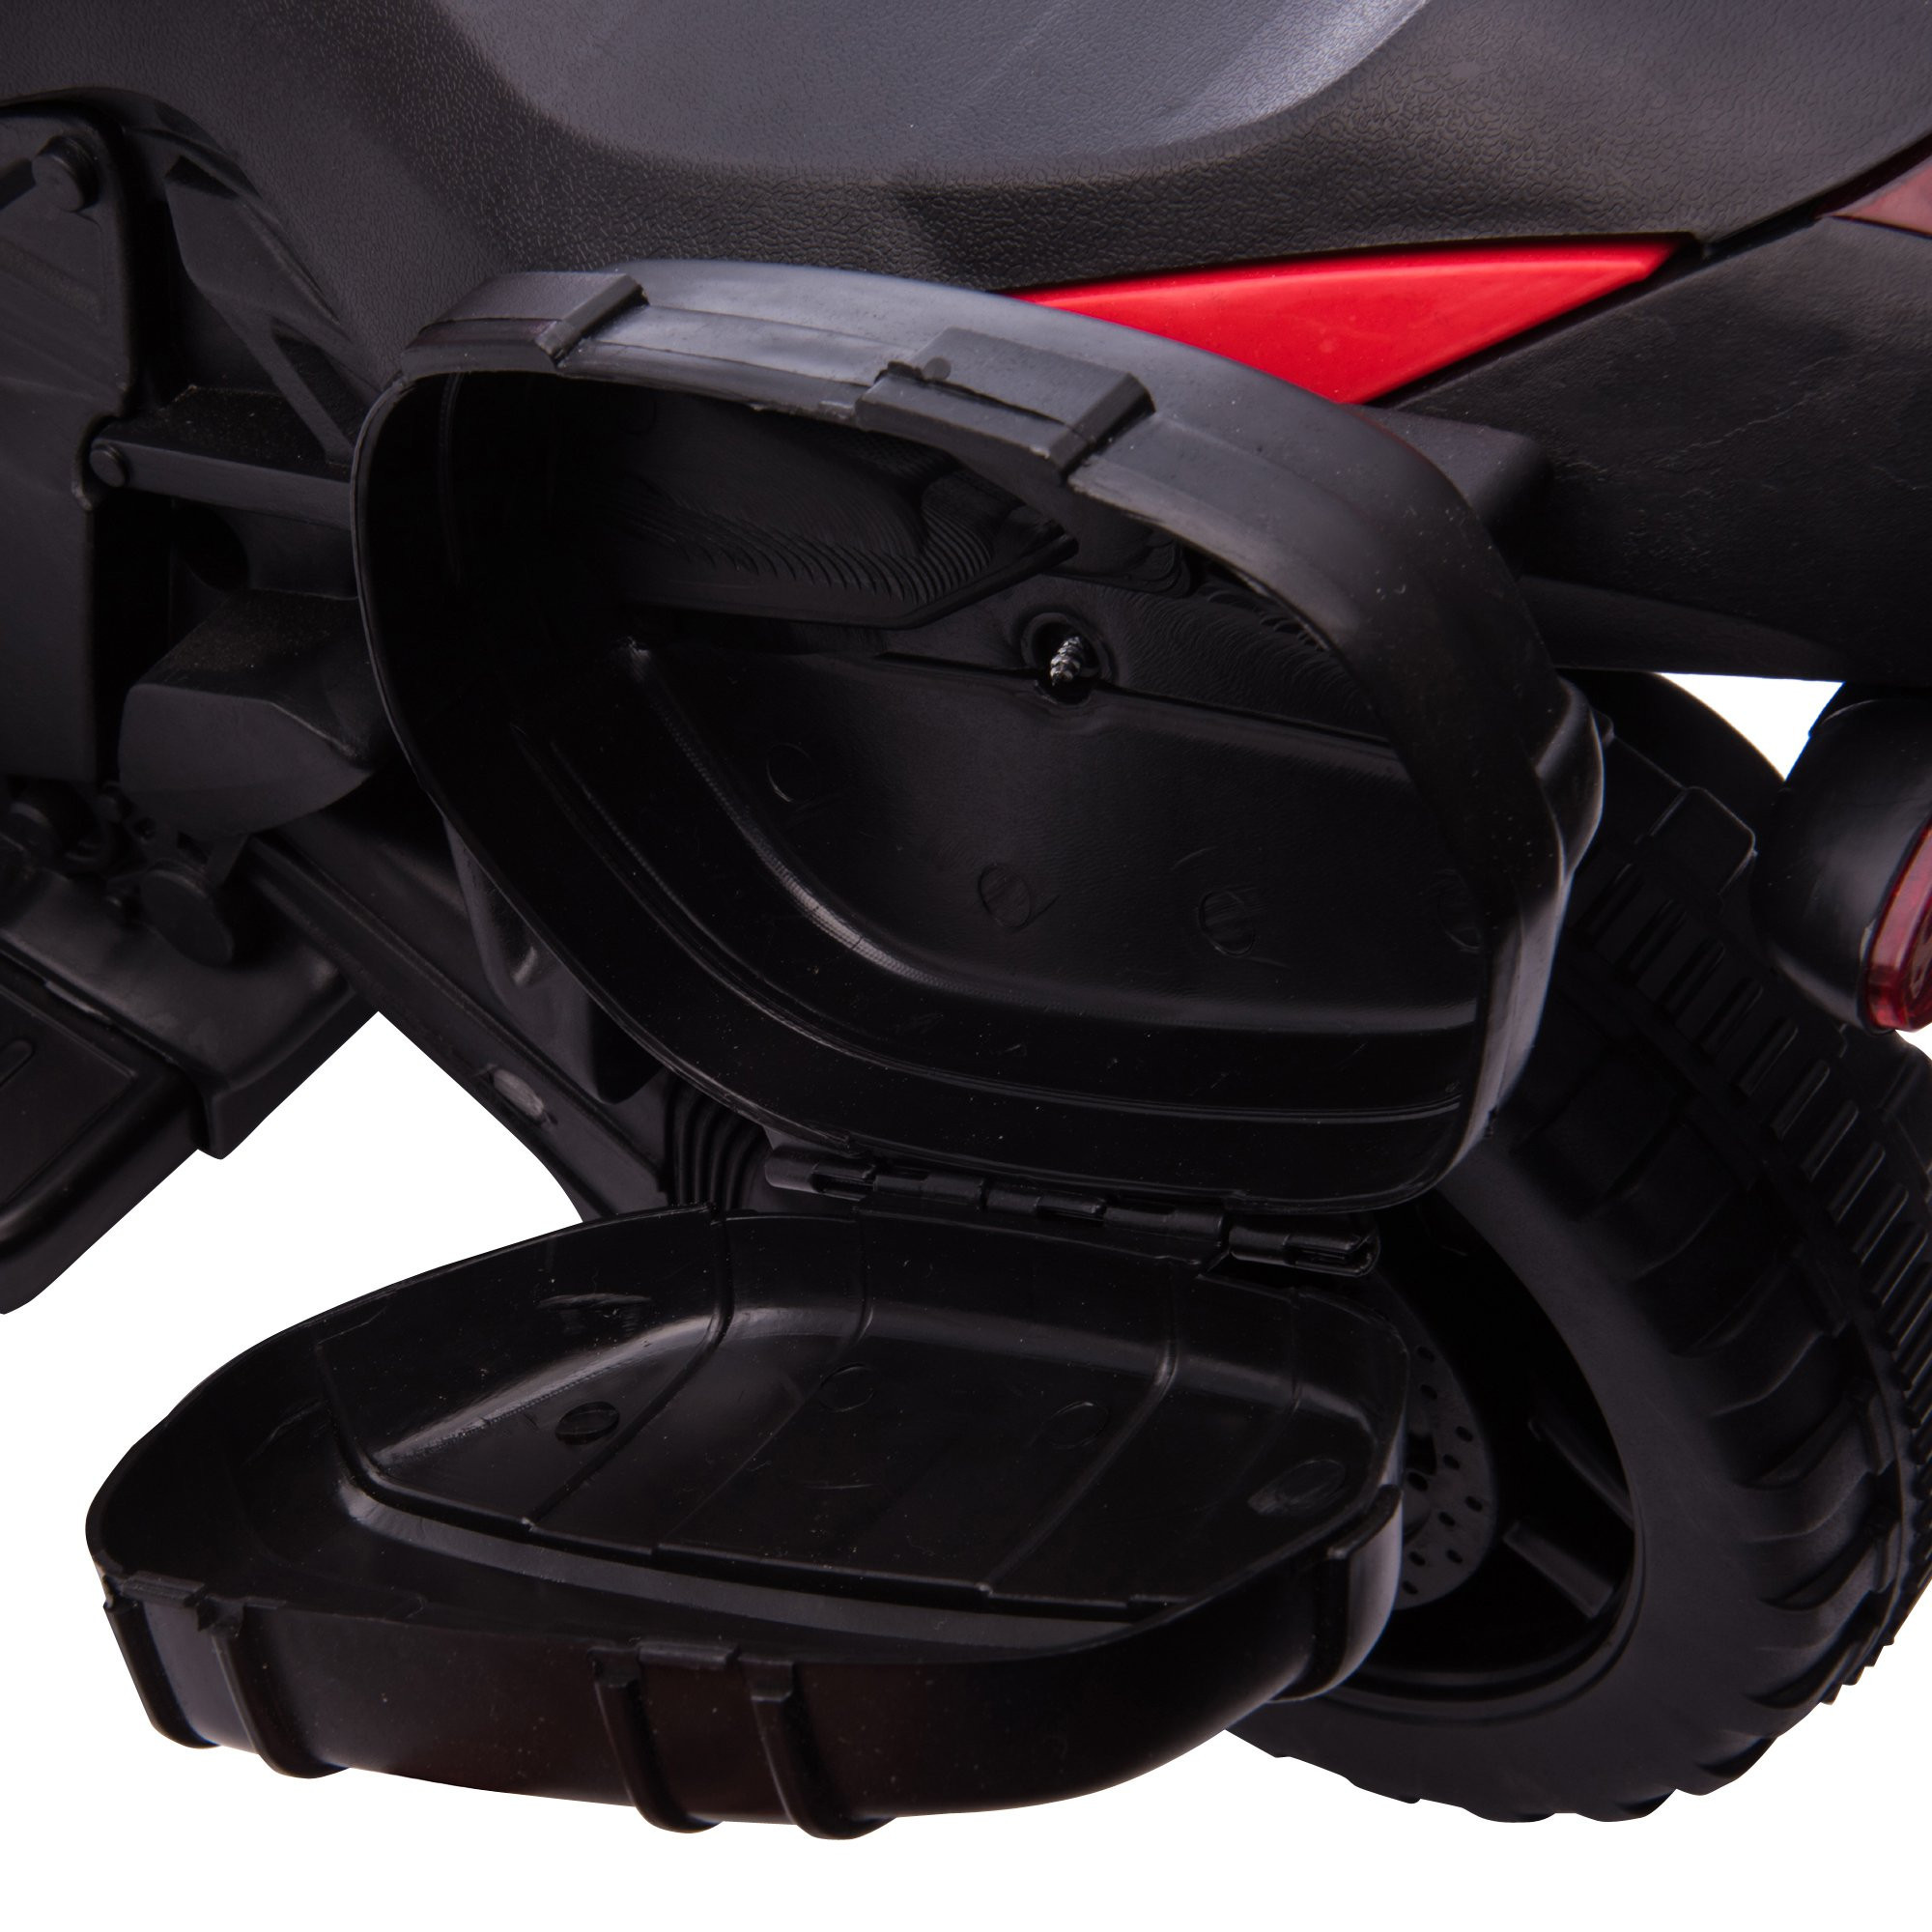 imagem de HOMCOM Moto Elétrica para Crianças a partir de 18 Meses 6V com Faróis Buzina 2 Rodas de Equilibrio Velocidade Máx. de 3km/h Motocicleta de Brinquedo 88,5x42,5x49cm Vermelho9